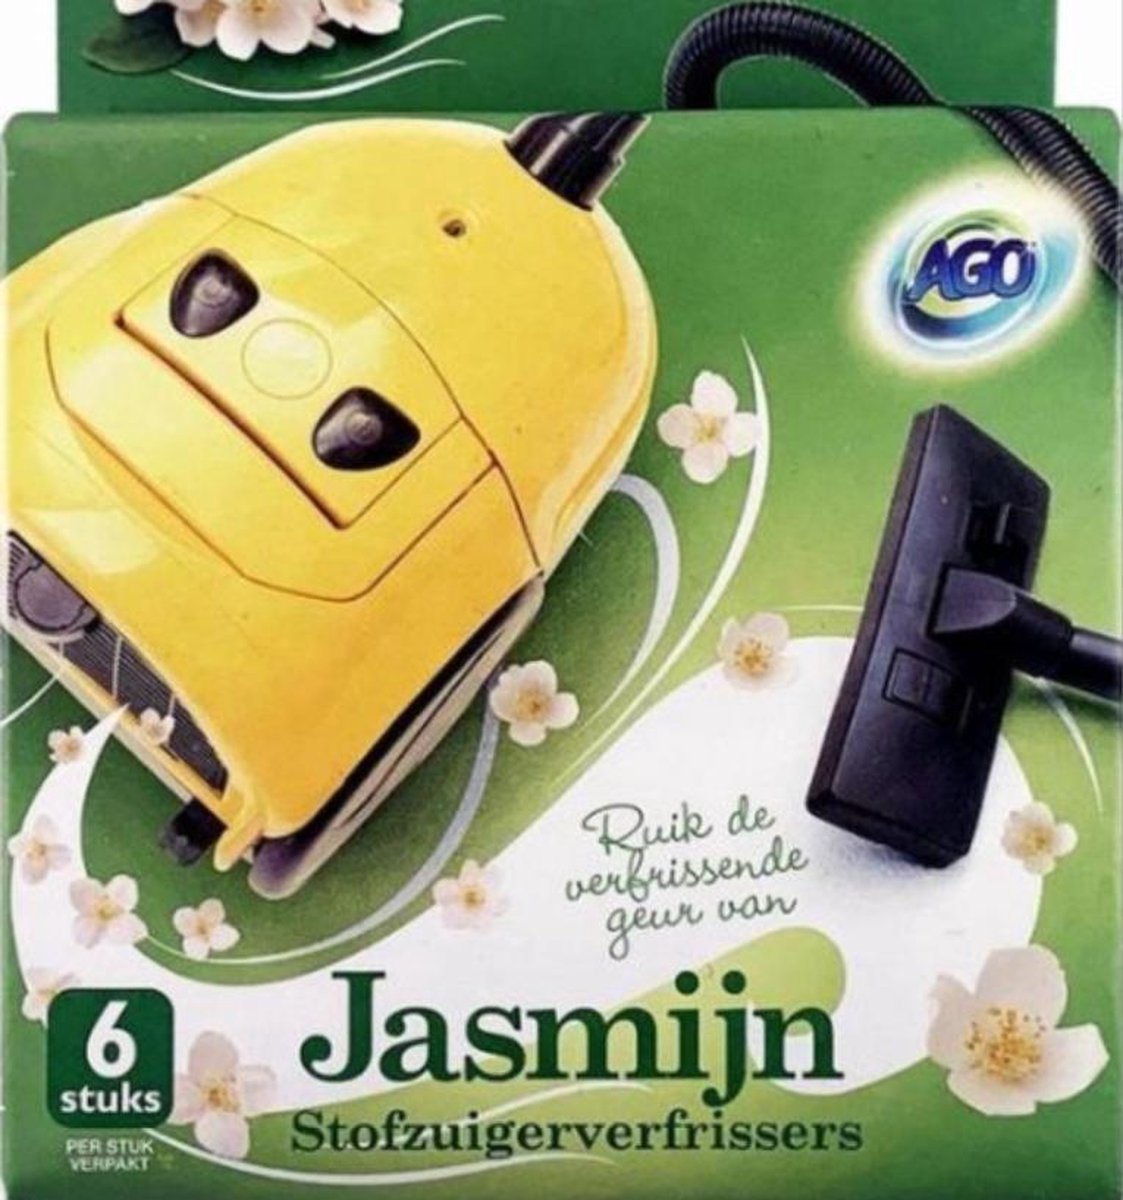 Stofzuigerzakje - stofzuiger luchtverfrisser - geur Jasmijn - 6 stuks - geurzakjes - verfrisser - Luchtje - stofzuigerverfrissers - voor in de stofzuigerzak -